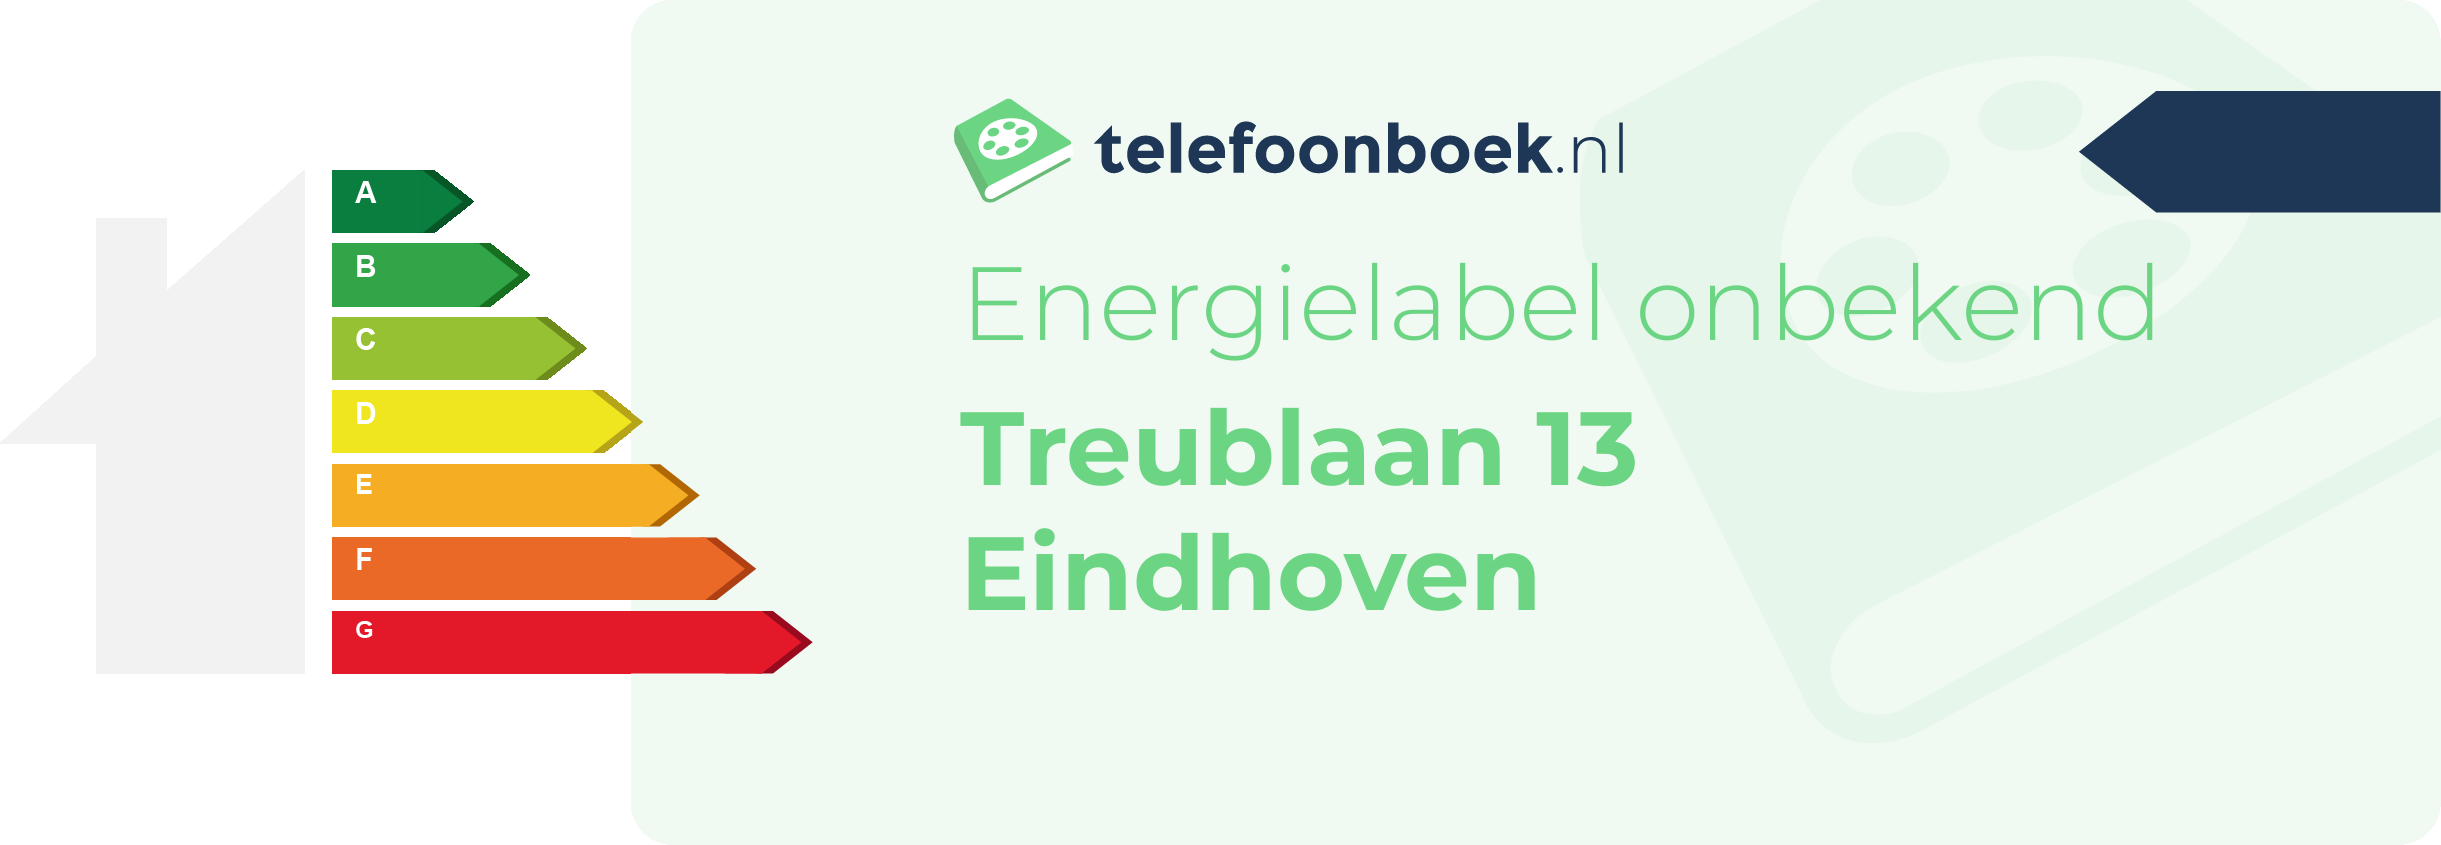 Energielabel Treublaan 13 Eindhoven